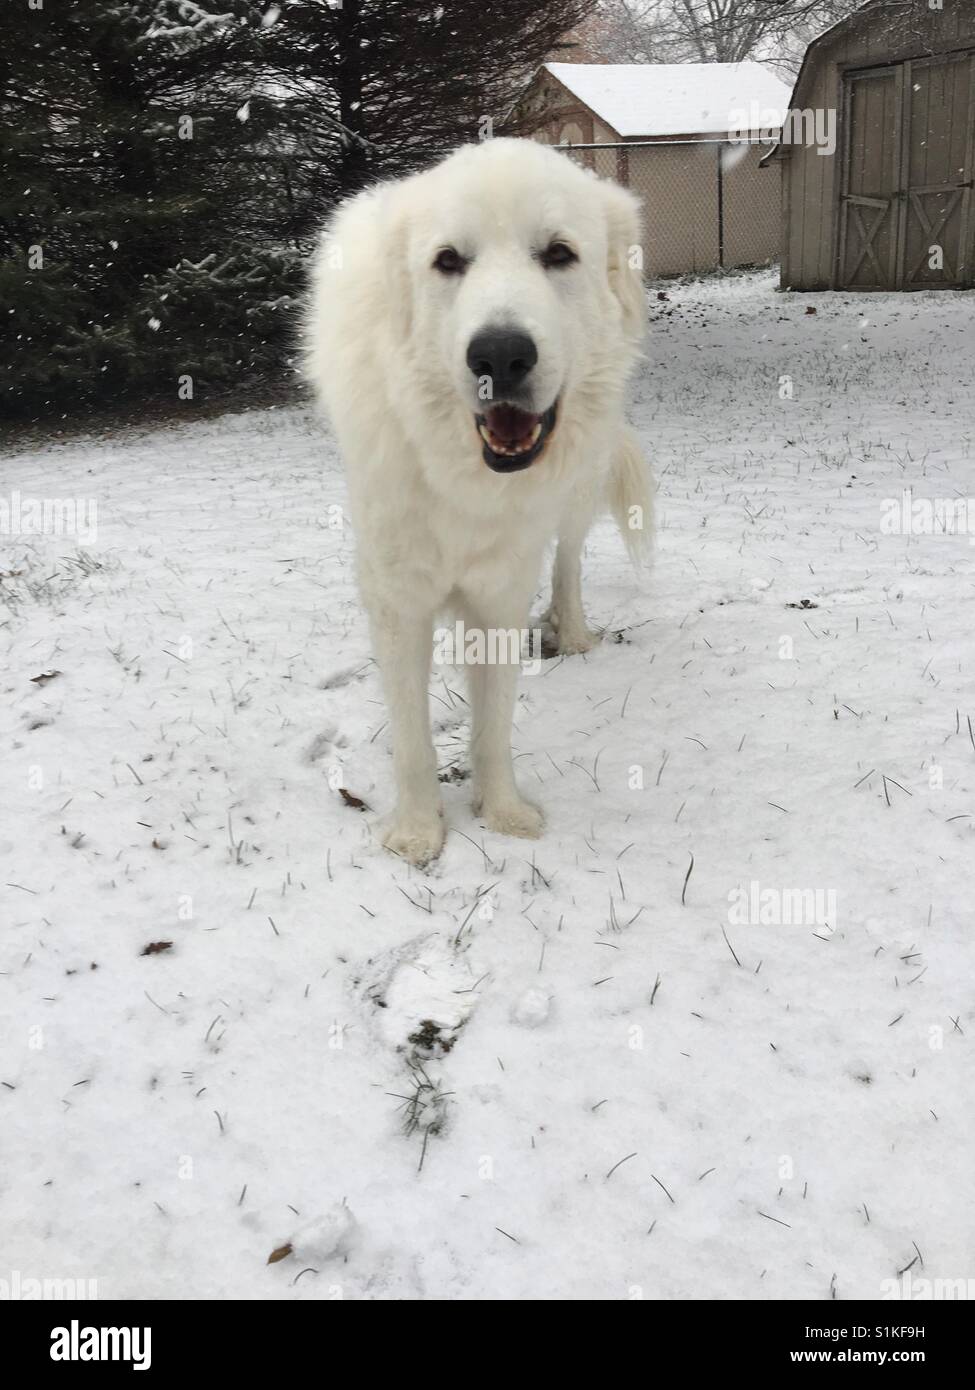 Polar bear doggy in the snow Stock Photo